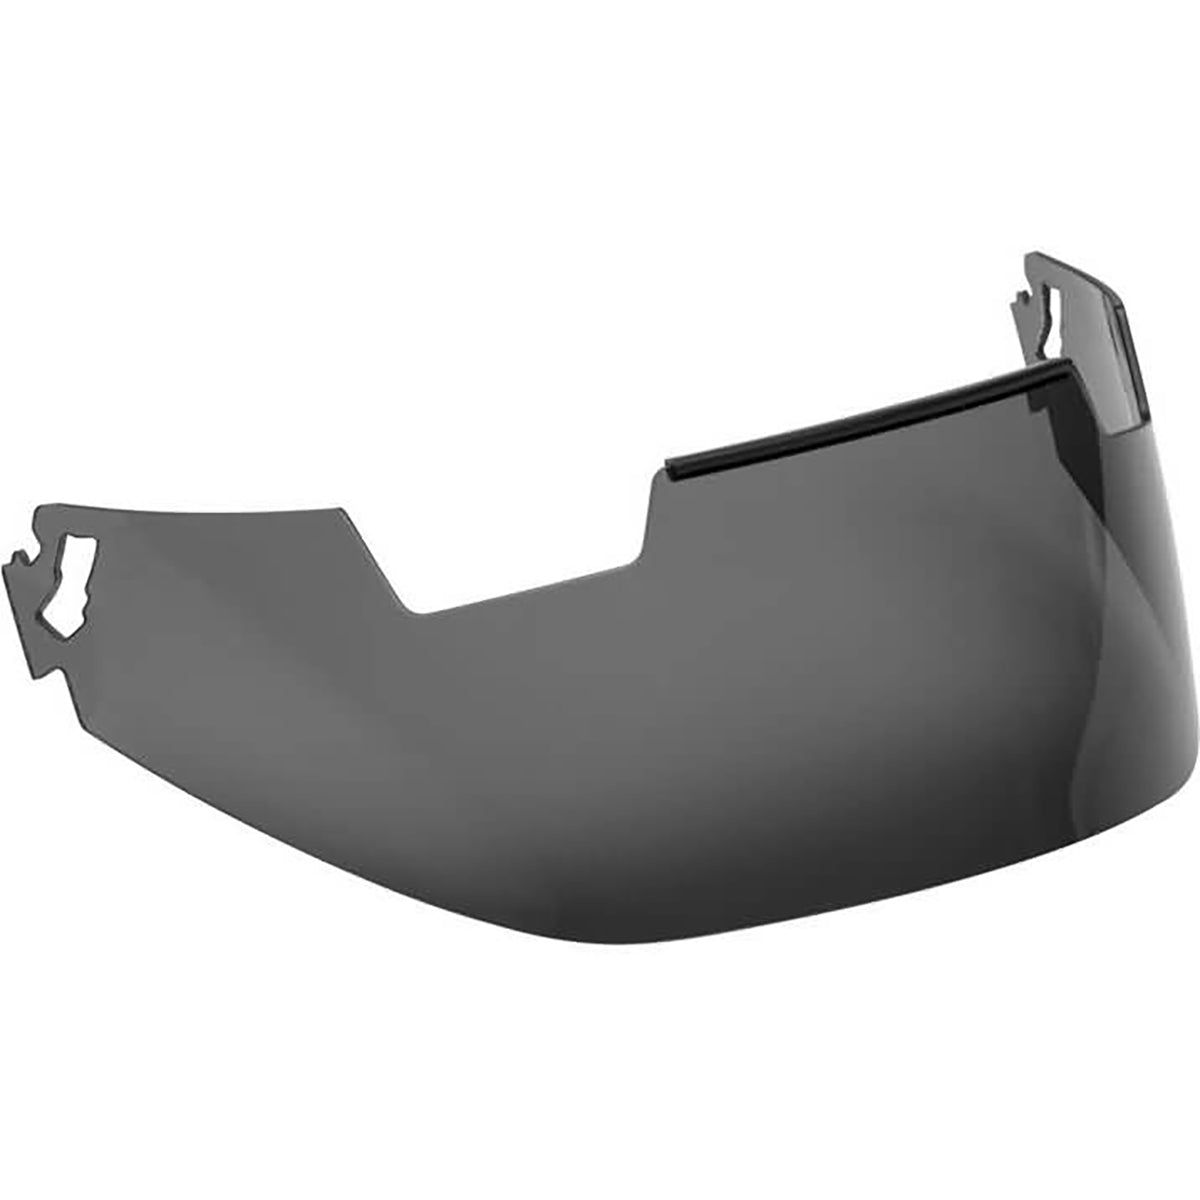 Arai VAS-V Pro Shade System Face Shield Helmet Accessories-820147